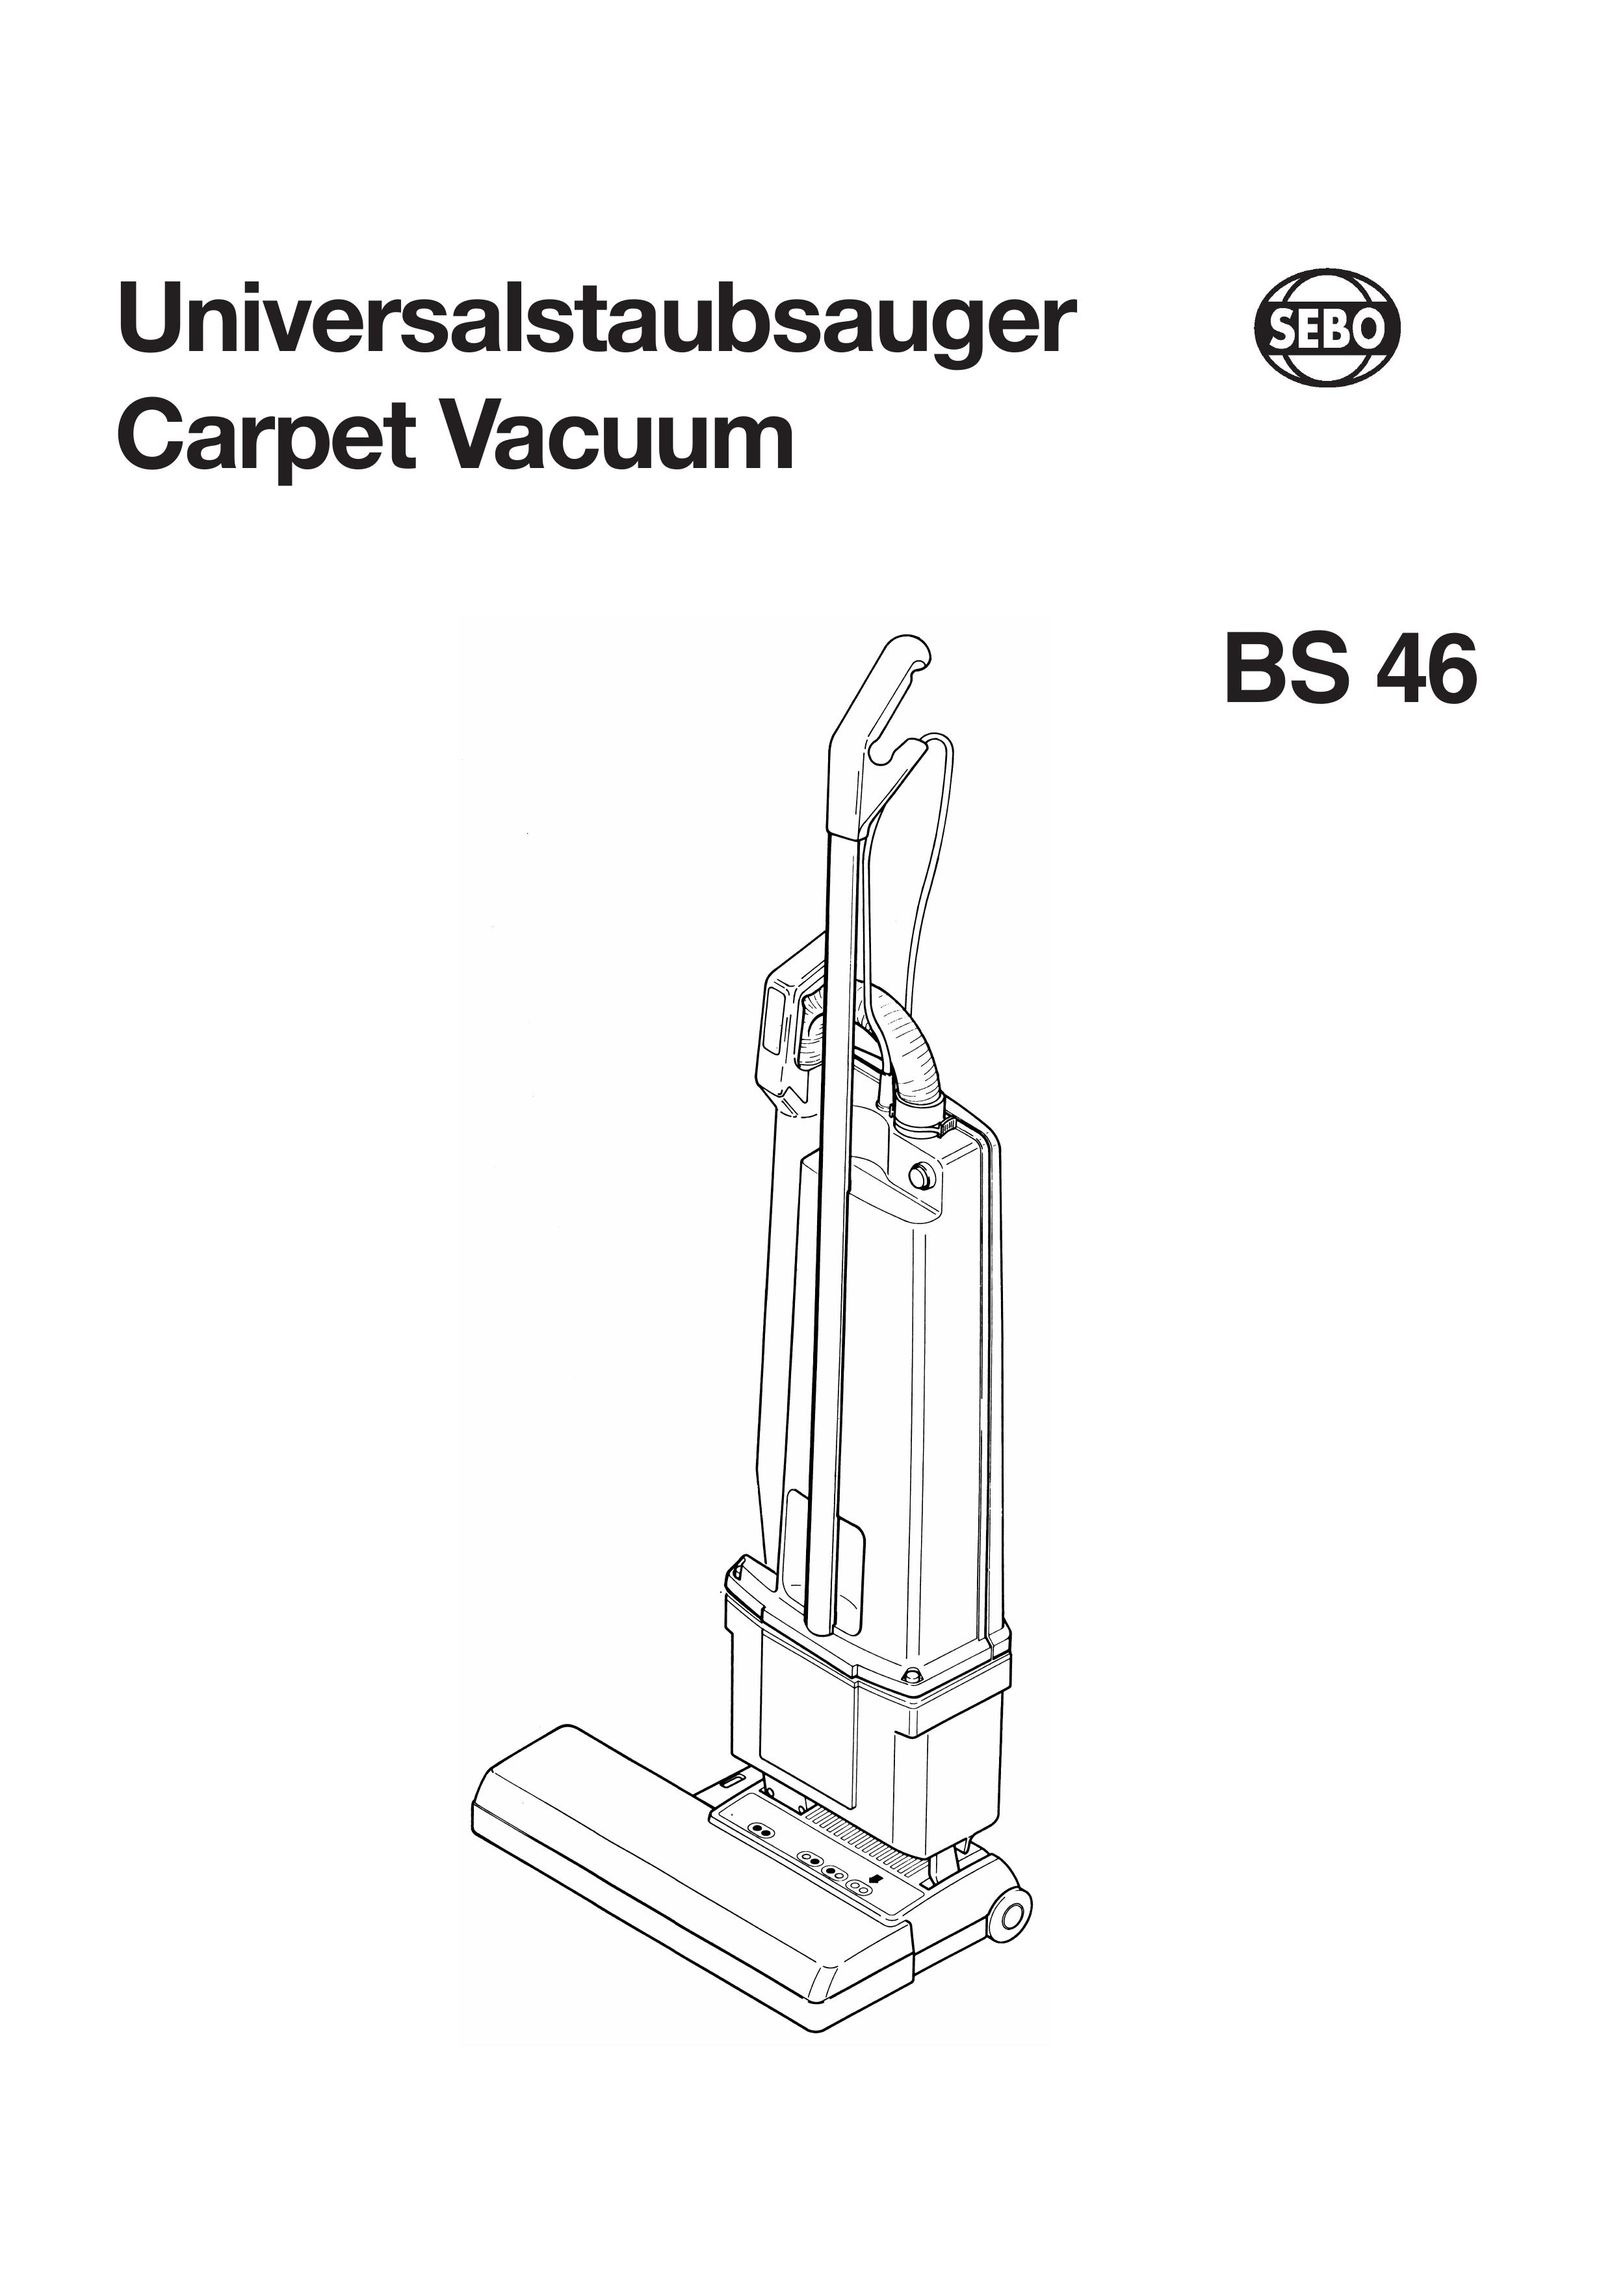 Sebo BS 46 Vacuum Cleaner User Manual